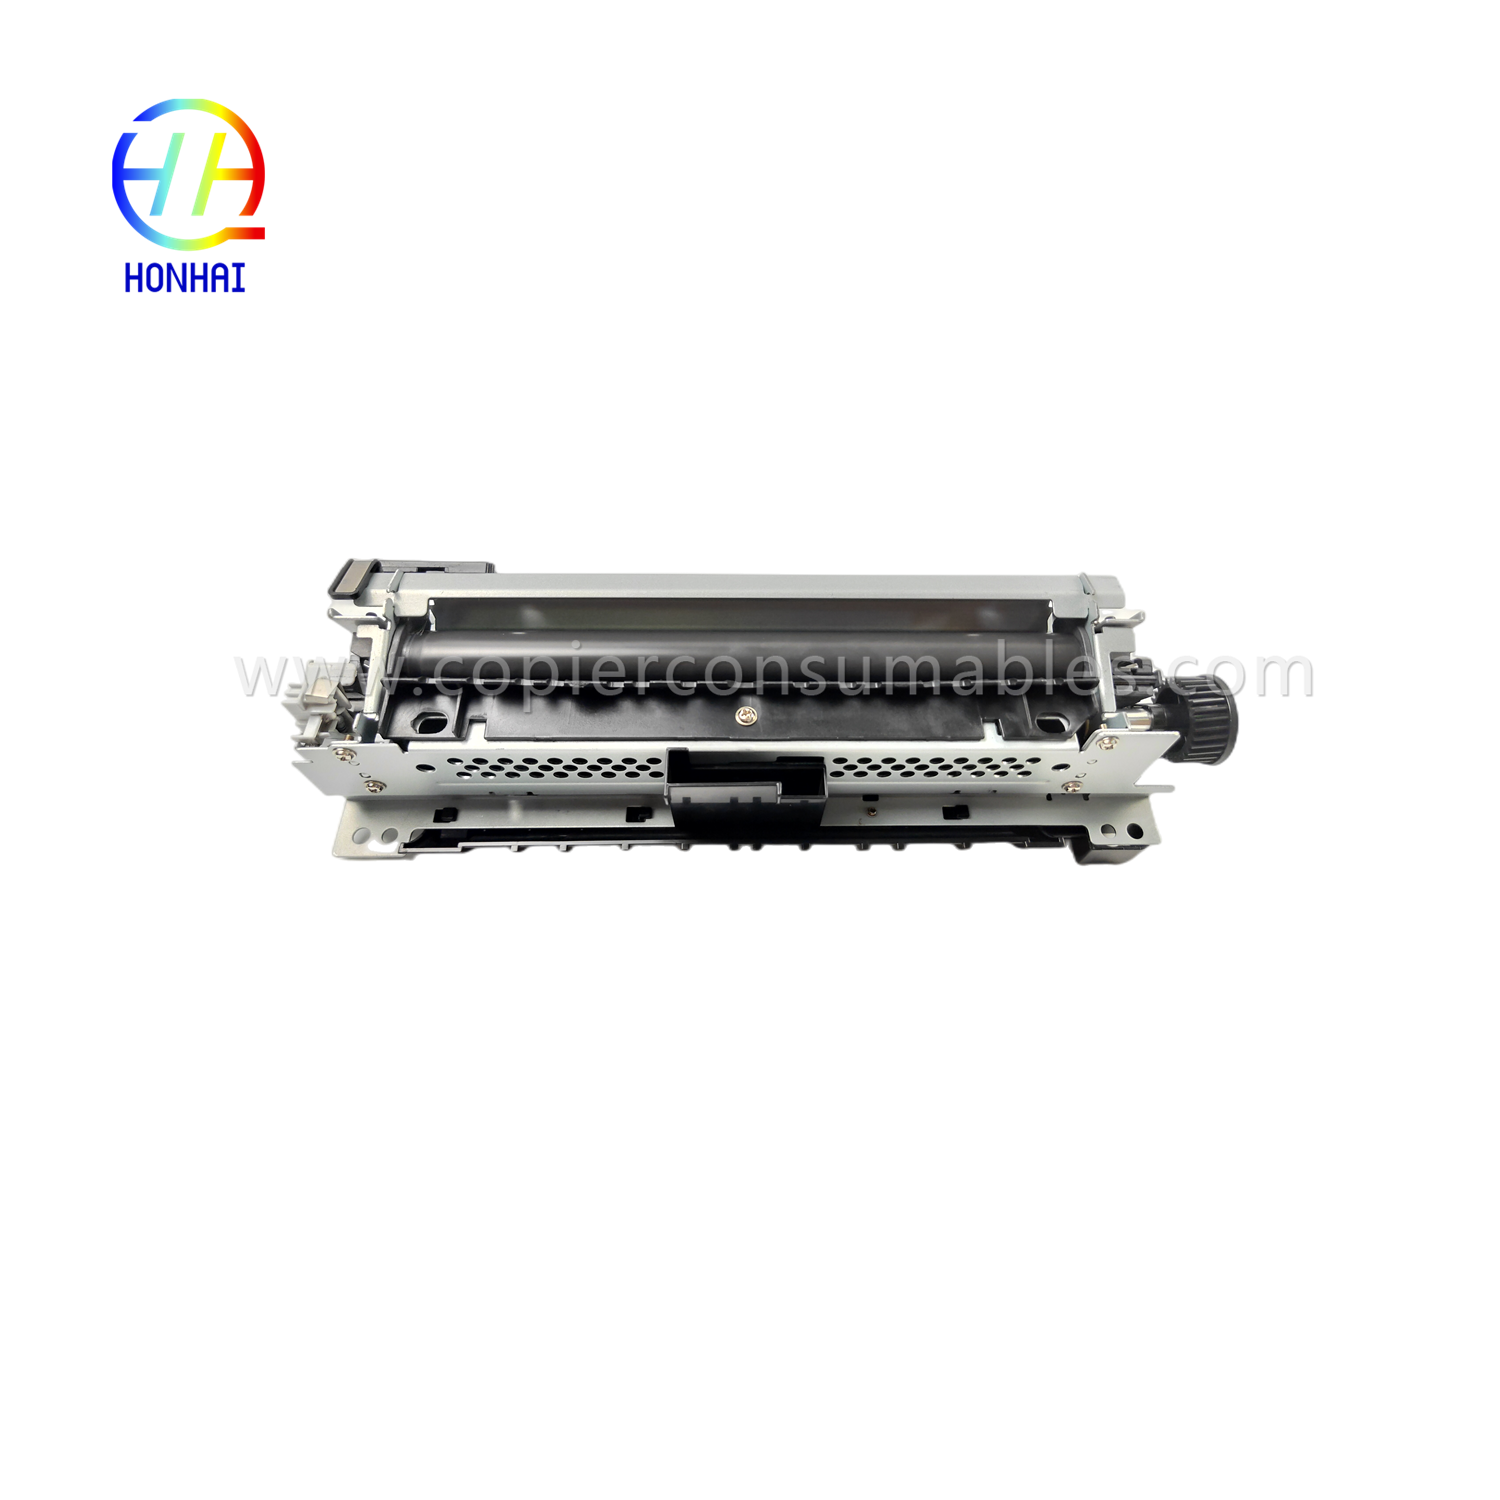 https://c585.goodo.net/fuser-assembly-220v-japan-for-hp-521-525-m521-m525-rm1-8508-rm1-8508-000-fuser-unit-samfurin/